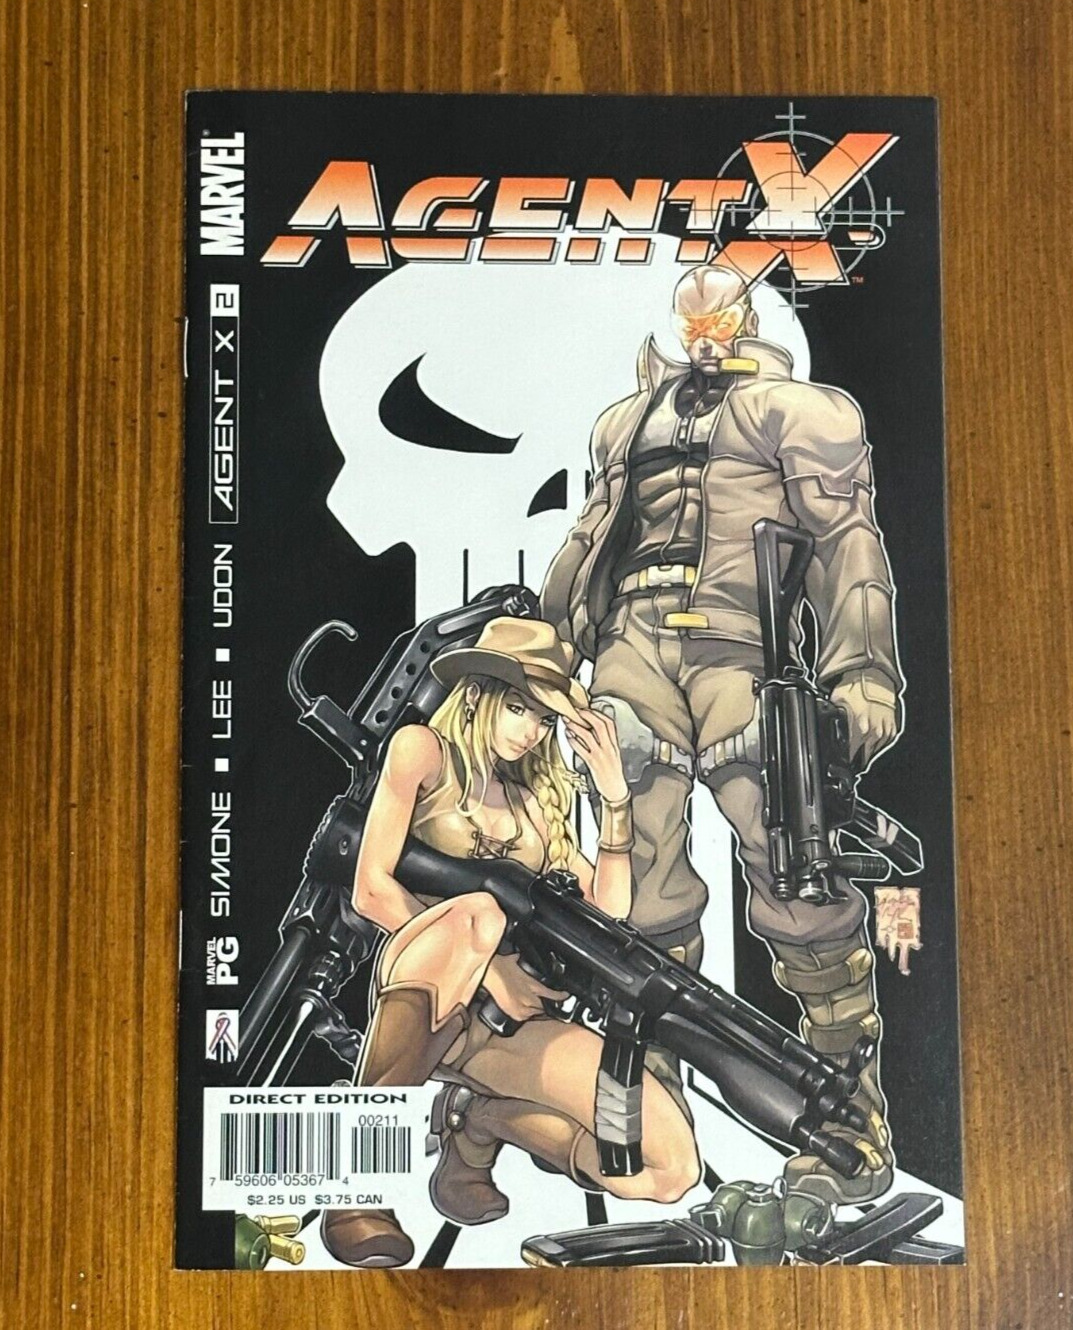 Agent X #2 (Marvel Comics, October 2002)